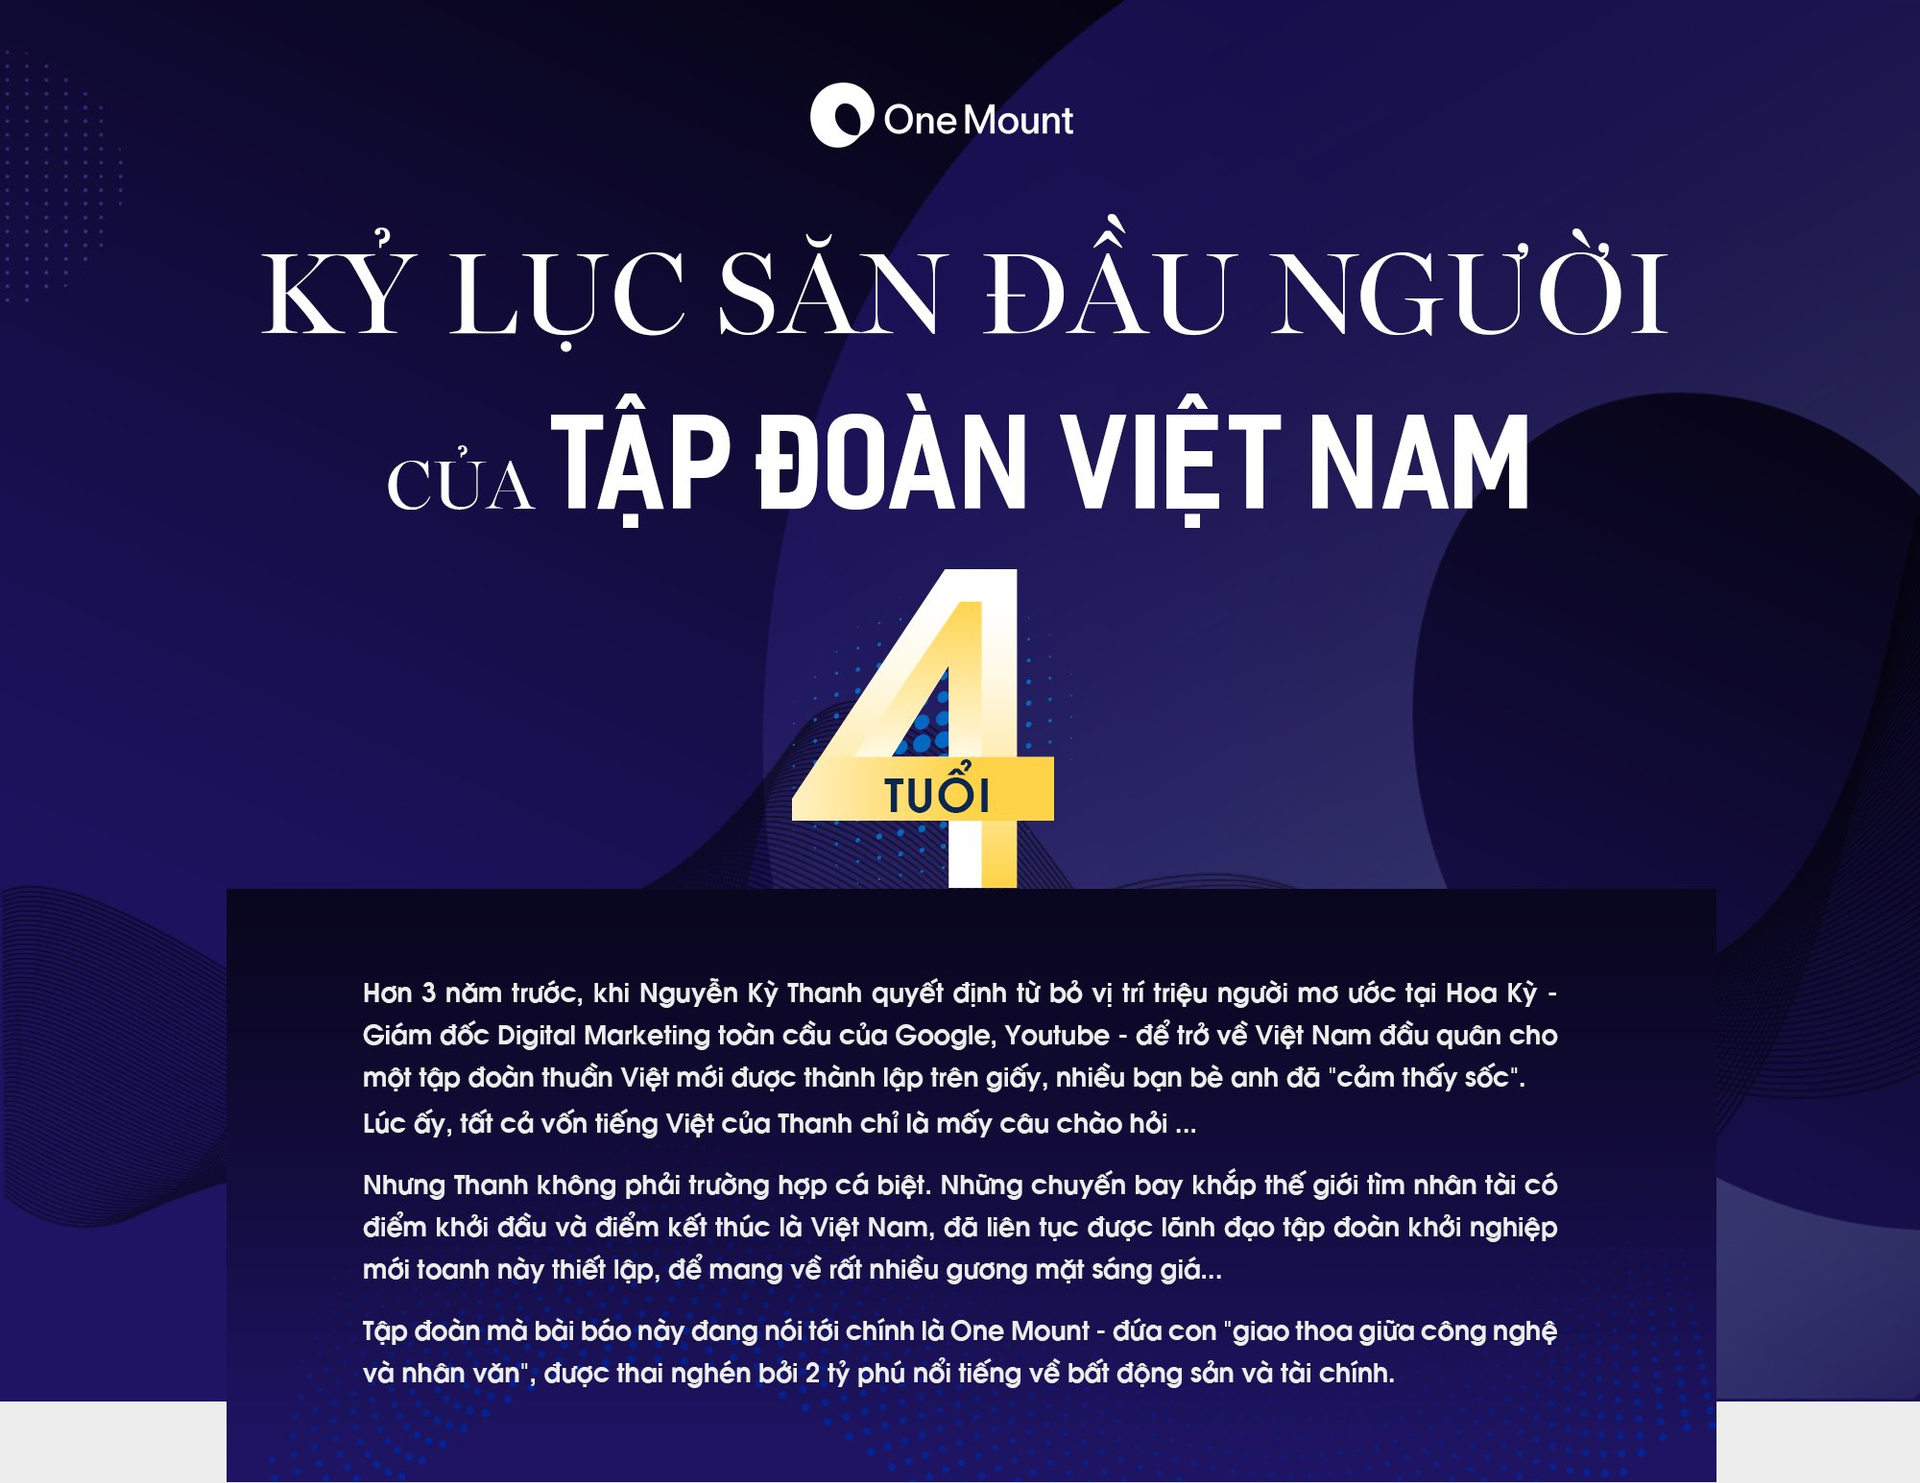 Kỷ lục săn đầu người của Tập đoàn Việt Nam 4 tuổi